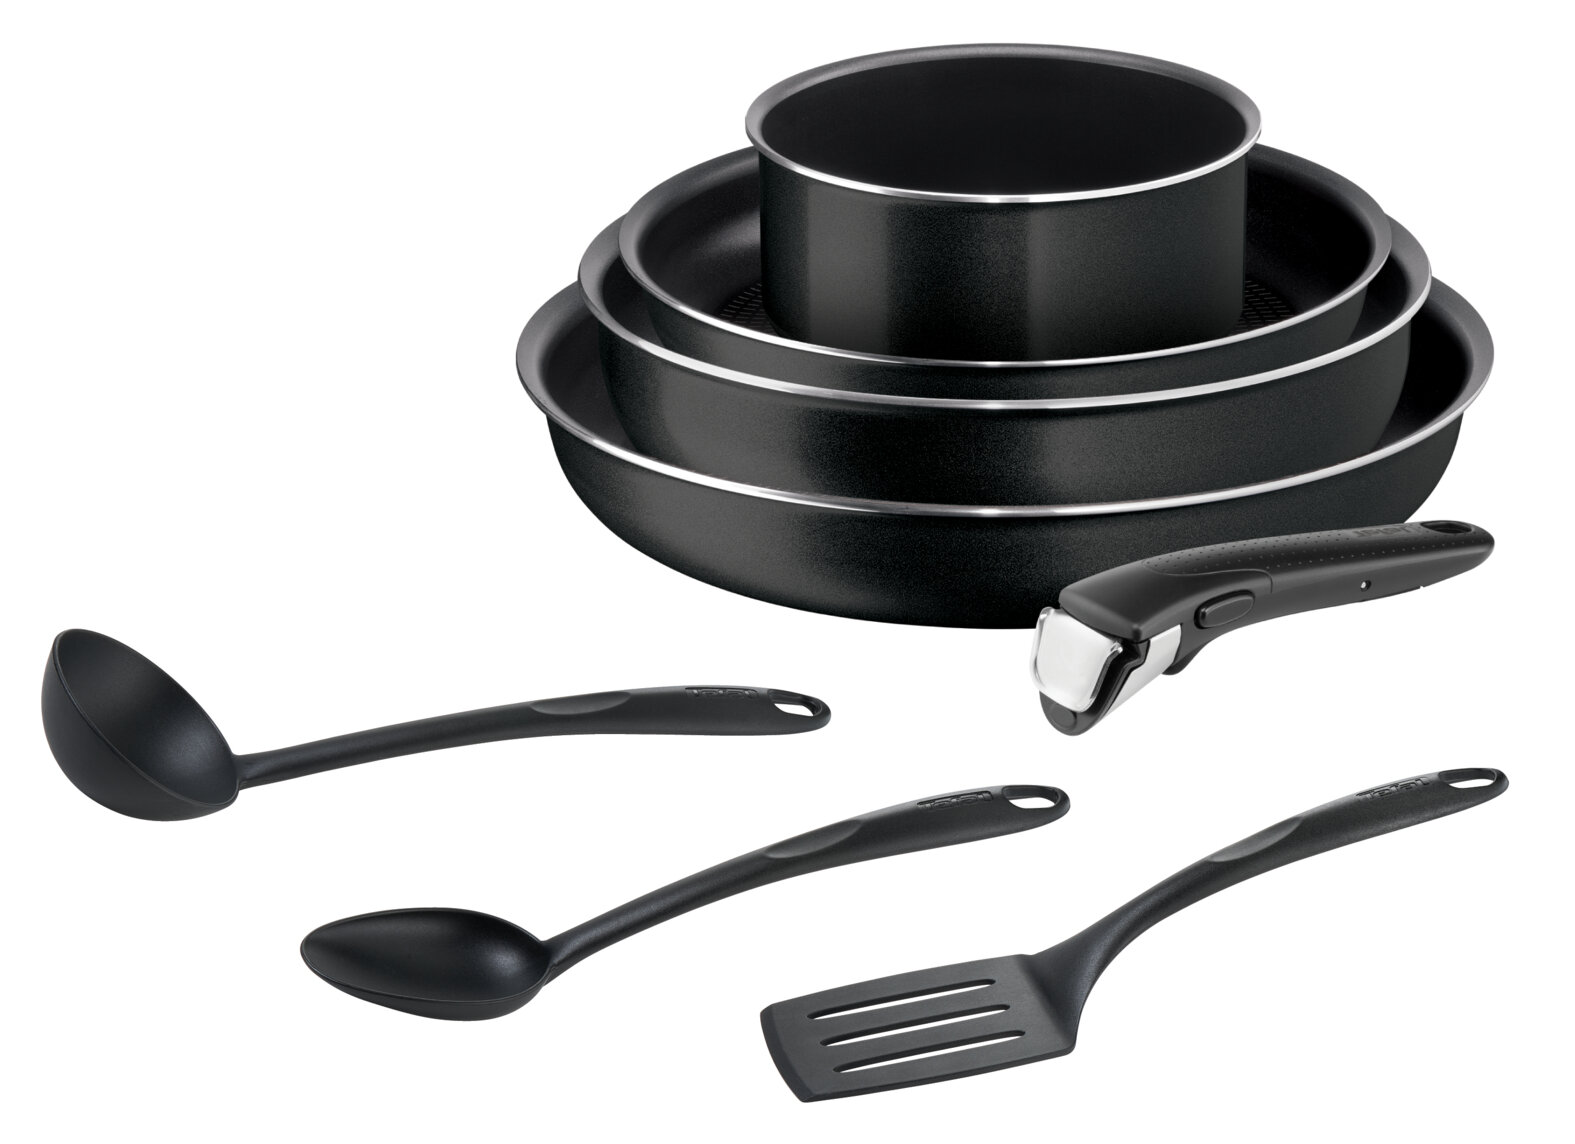 Набор посуды со съемной ручкой Tefal Ingenio Black 04238850, 8 предметов: ковш 16см, сковороды 24, 26, 28 см, кухонные аксессуары, с индикатором температуры и антипригарным покрытием, для газовых, электрических плит